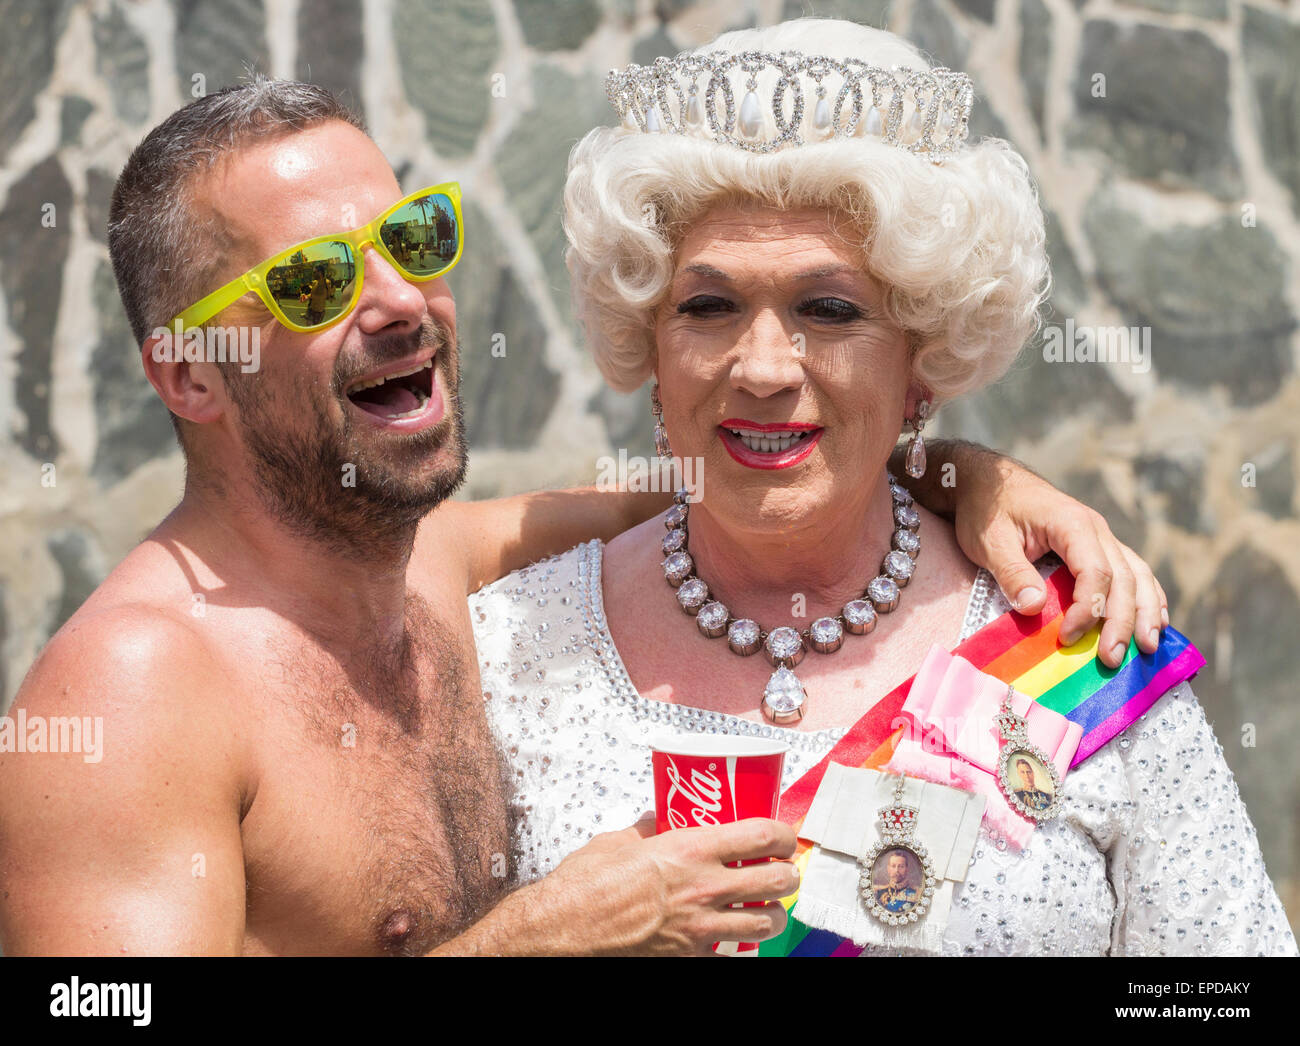 Maspalomas, Gran Canaria, Kanarische Inseln, Spanien. 16. Mai 2015. Queen Sie-Elizabeth-Look-alike in Maspalomas-Gay-Pride-Parade auf Gran Canaria, wo rund 120.000 Teilnehmer und Zuschauer erwartet wurden. Bildnachweis: ALANDAWSONPHOTOGRAPHY/Alamy Live-Nachrichten Stockfoto